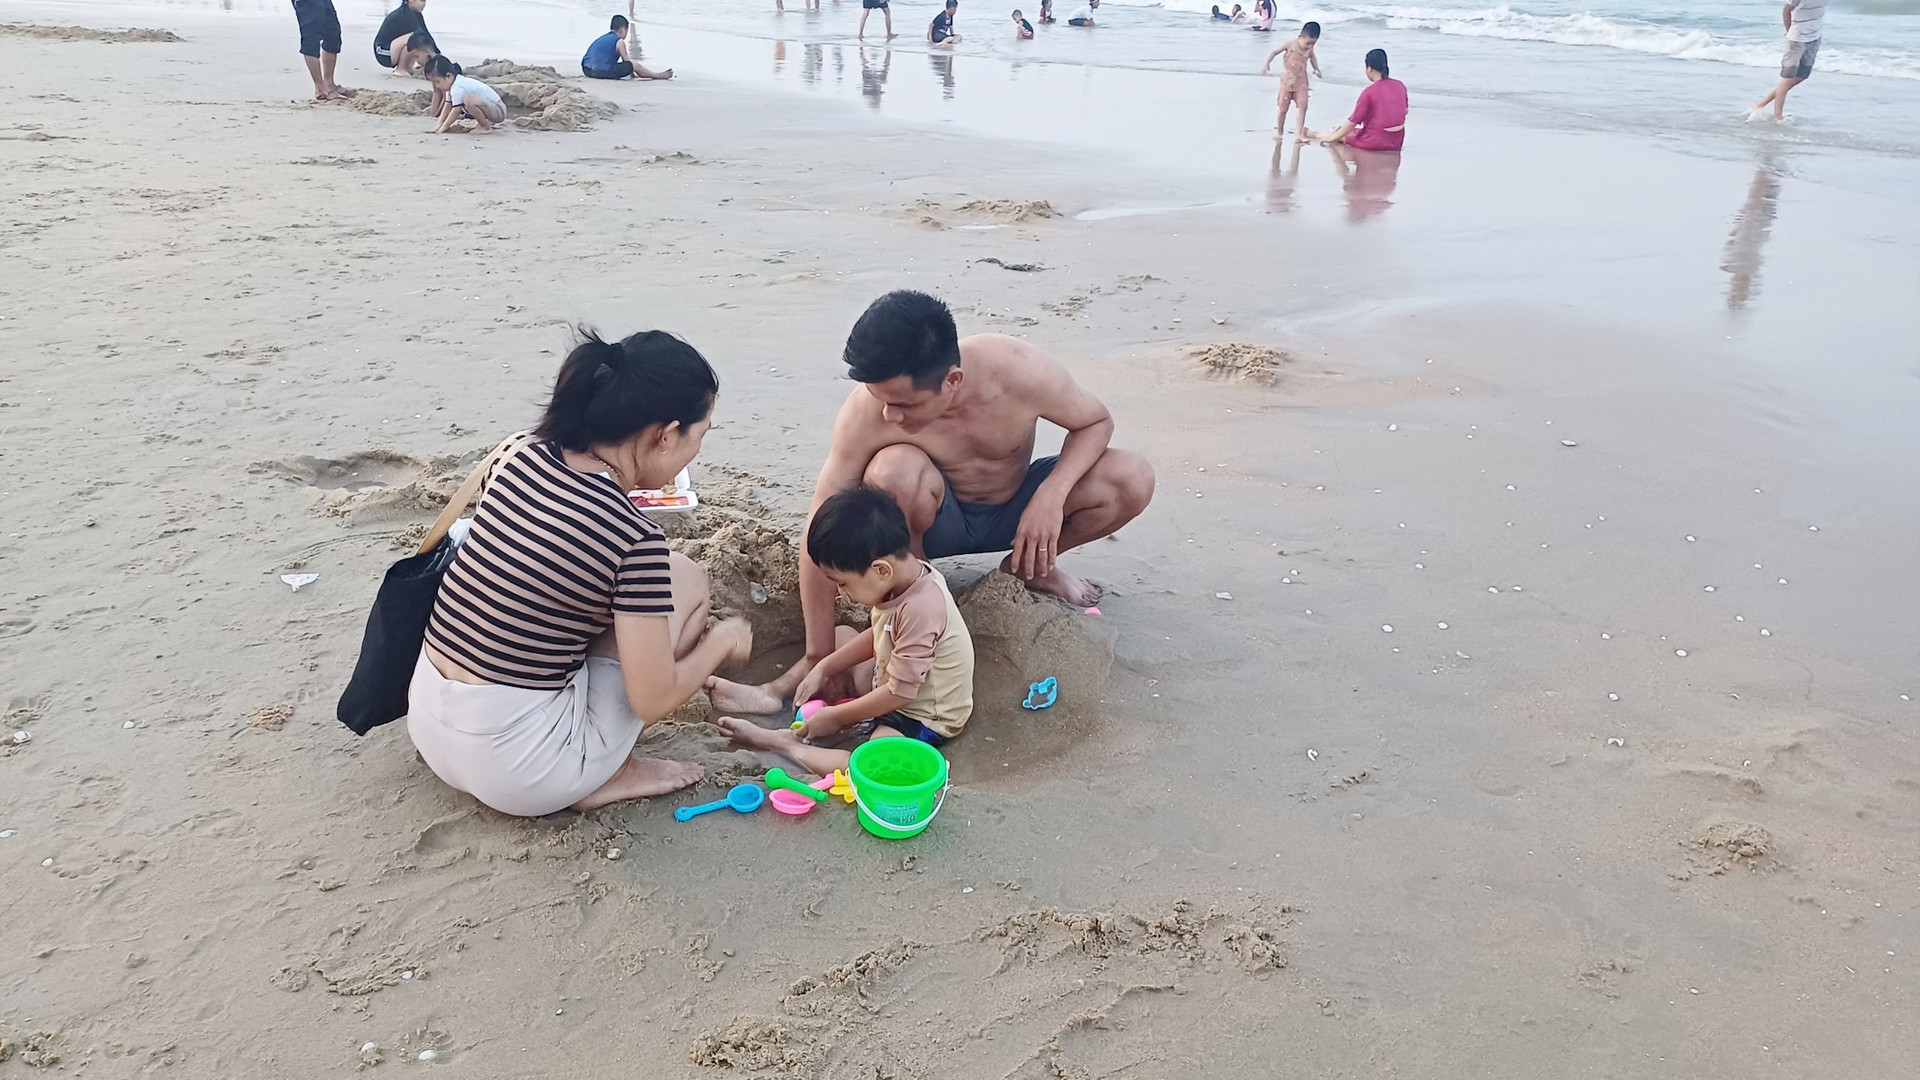 Phần lớn các gia đình dẫn con đi tắm biển và vui chơi sau những giờ làm việc, học tập. Ảnh: Q.H